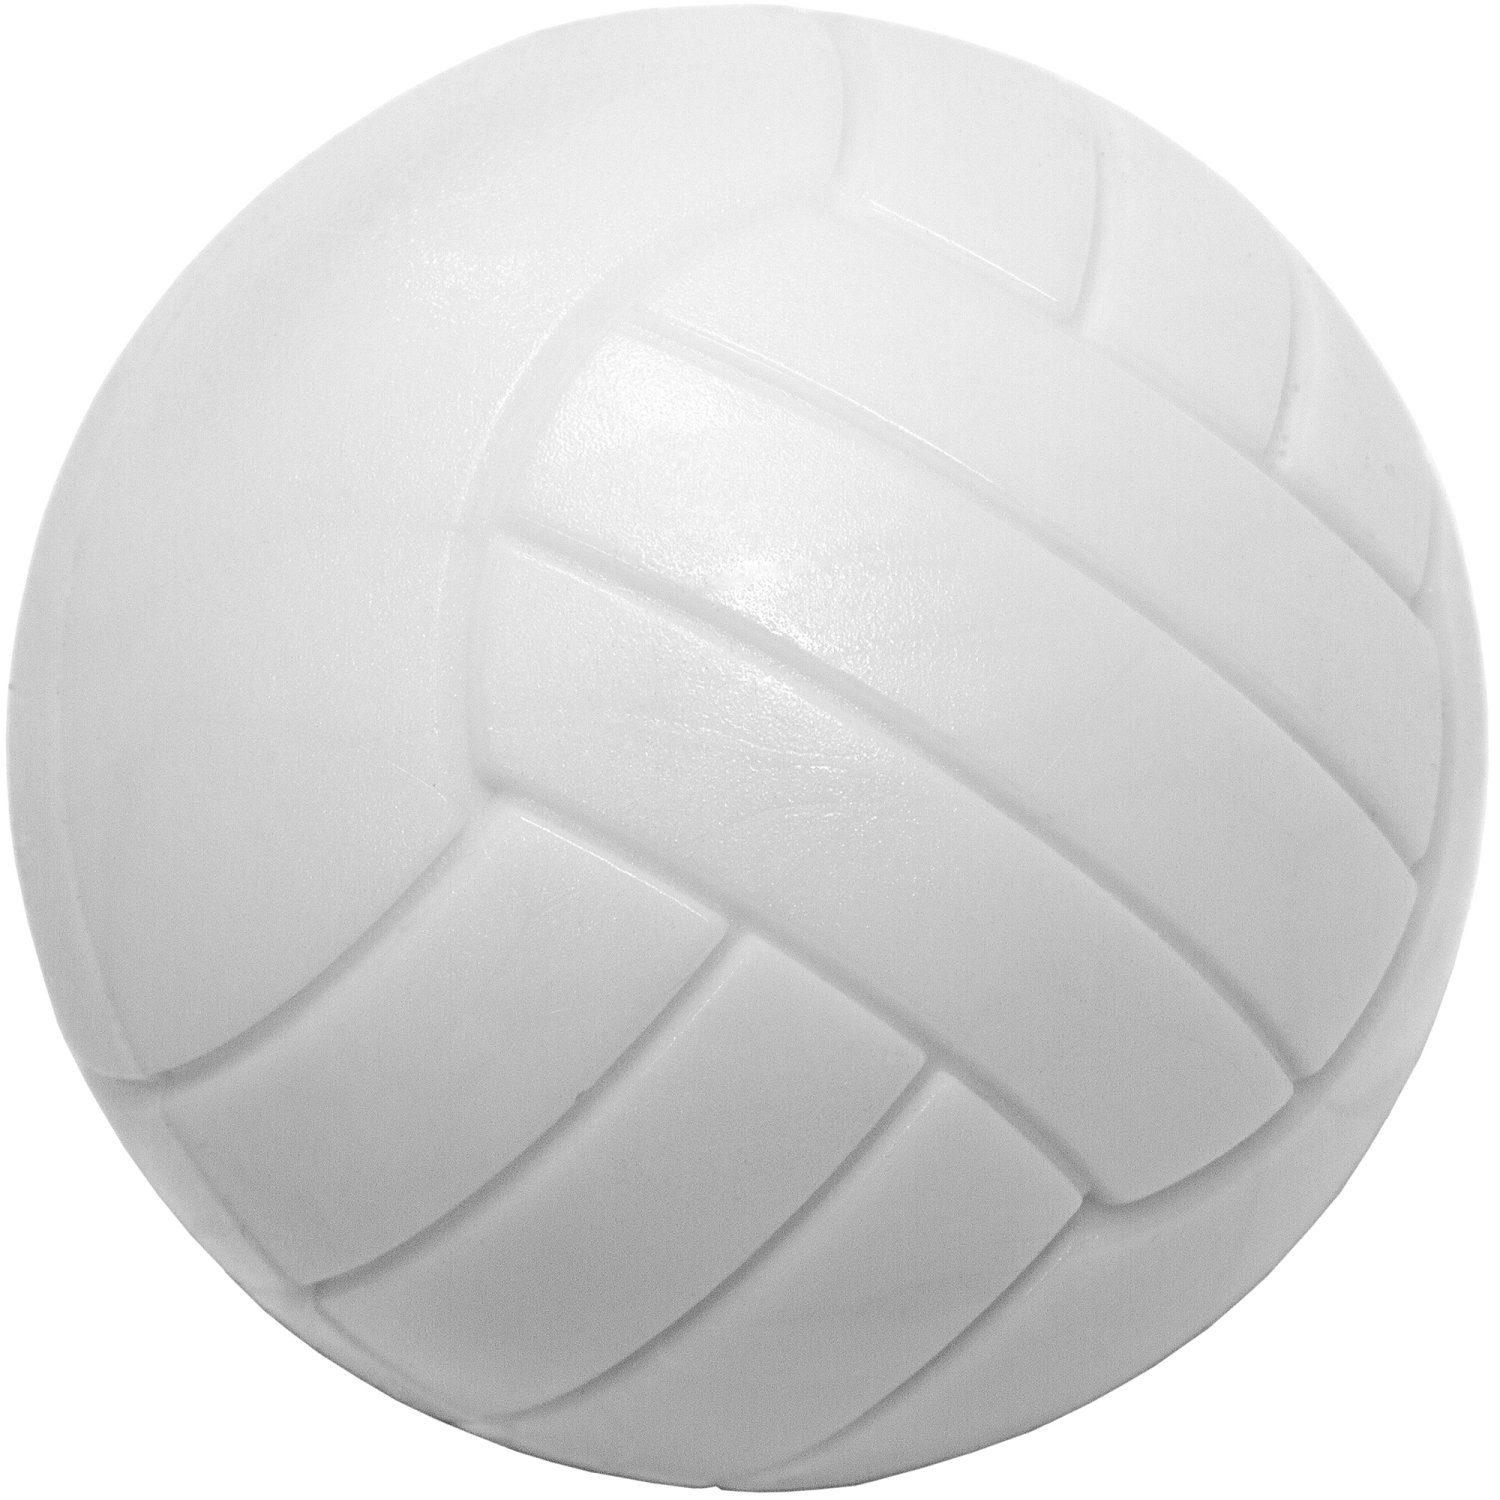 PE,PU, Kickerbälle, Games oder 12 Kickerbälle Sorten GAMES 35mm, (Kork, Kunststoff), Tischfussball Stück Durchmesser Ball (Set), unterschiedliche Spielball Mischung, Planet PLANET 6 6